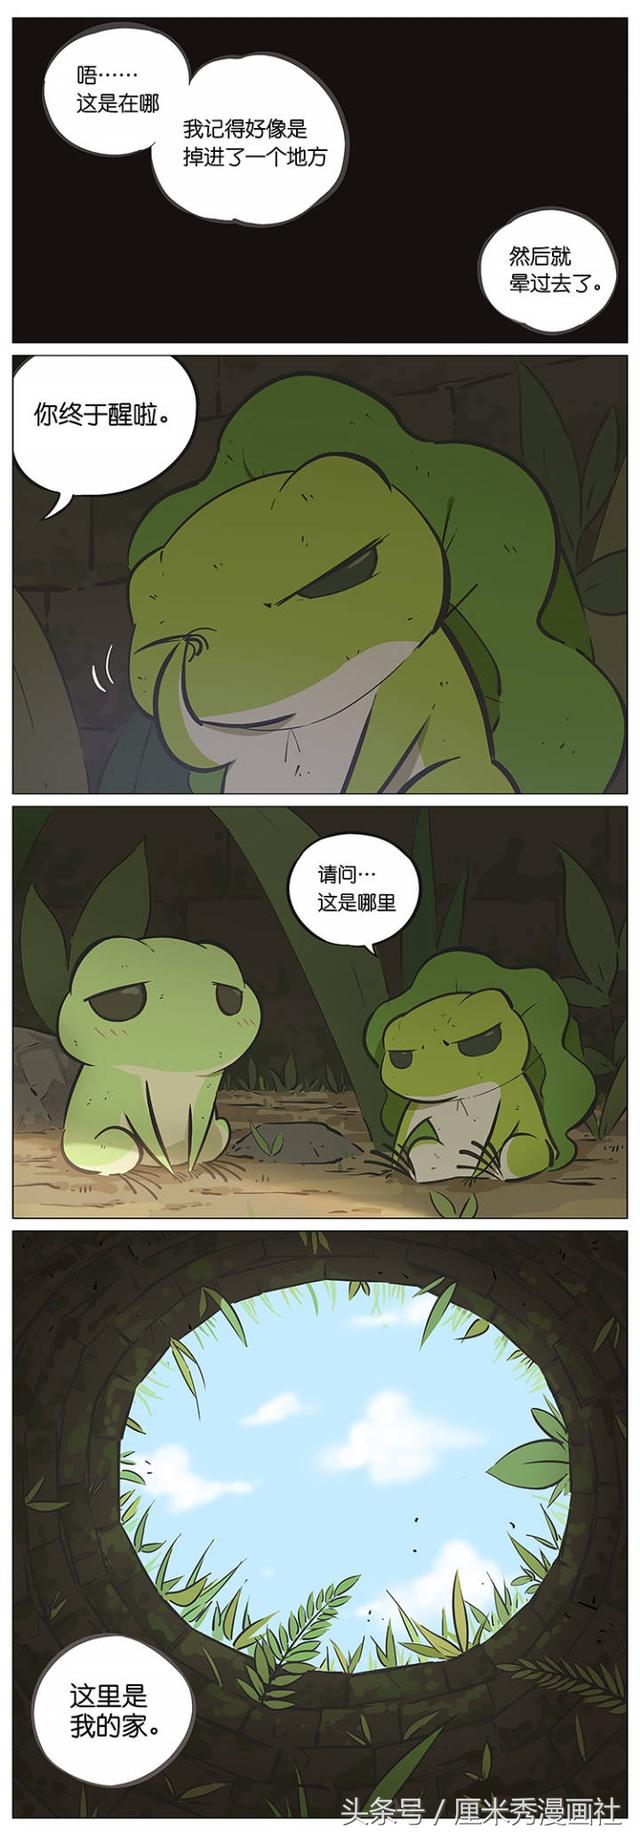 漫画:旅行青蛙之井底之蛙_搜狐动漫_搜狐网